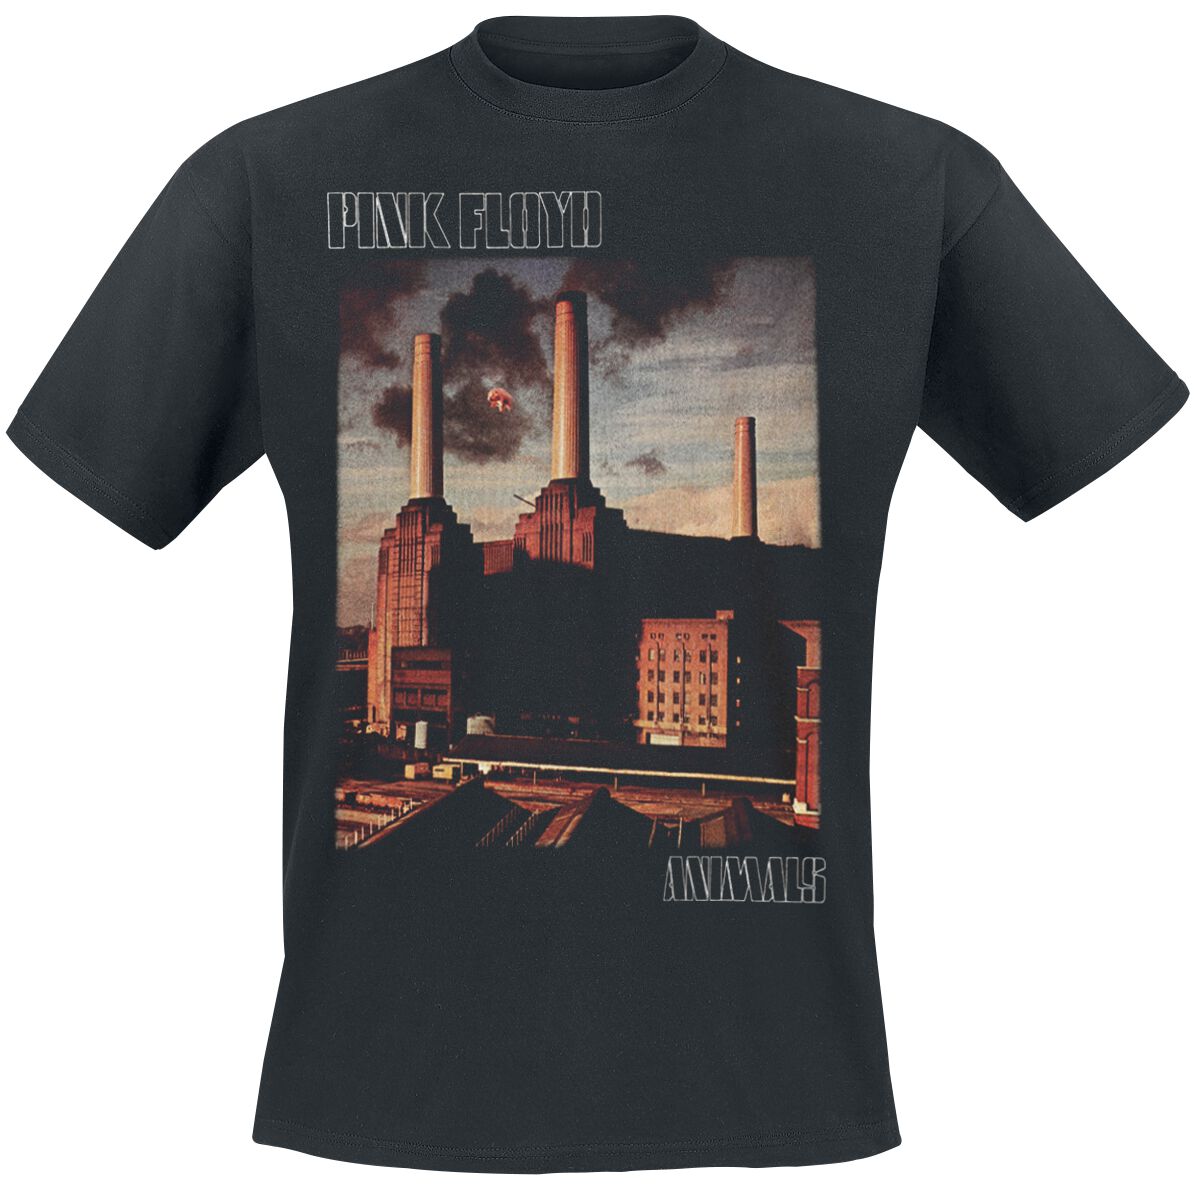 Pink Floyd T-Shirt - Animals - S bis 5XL - für Männer - Größe 5XL - schwarz  - Lizenziertes Merchandise!